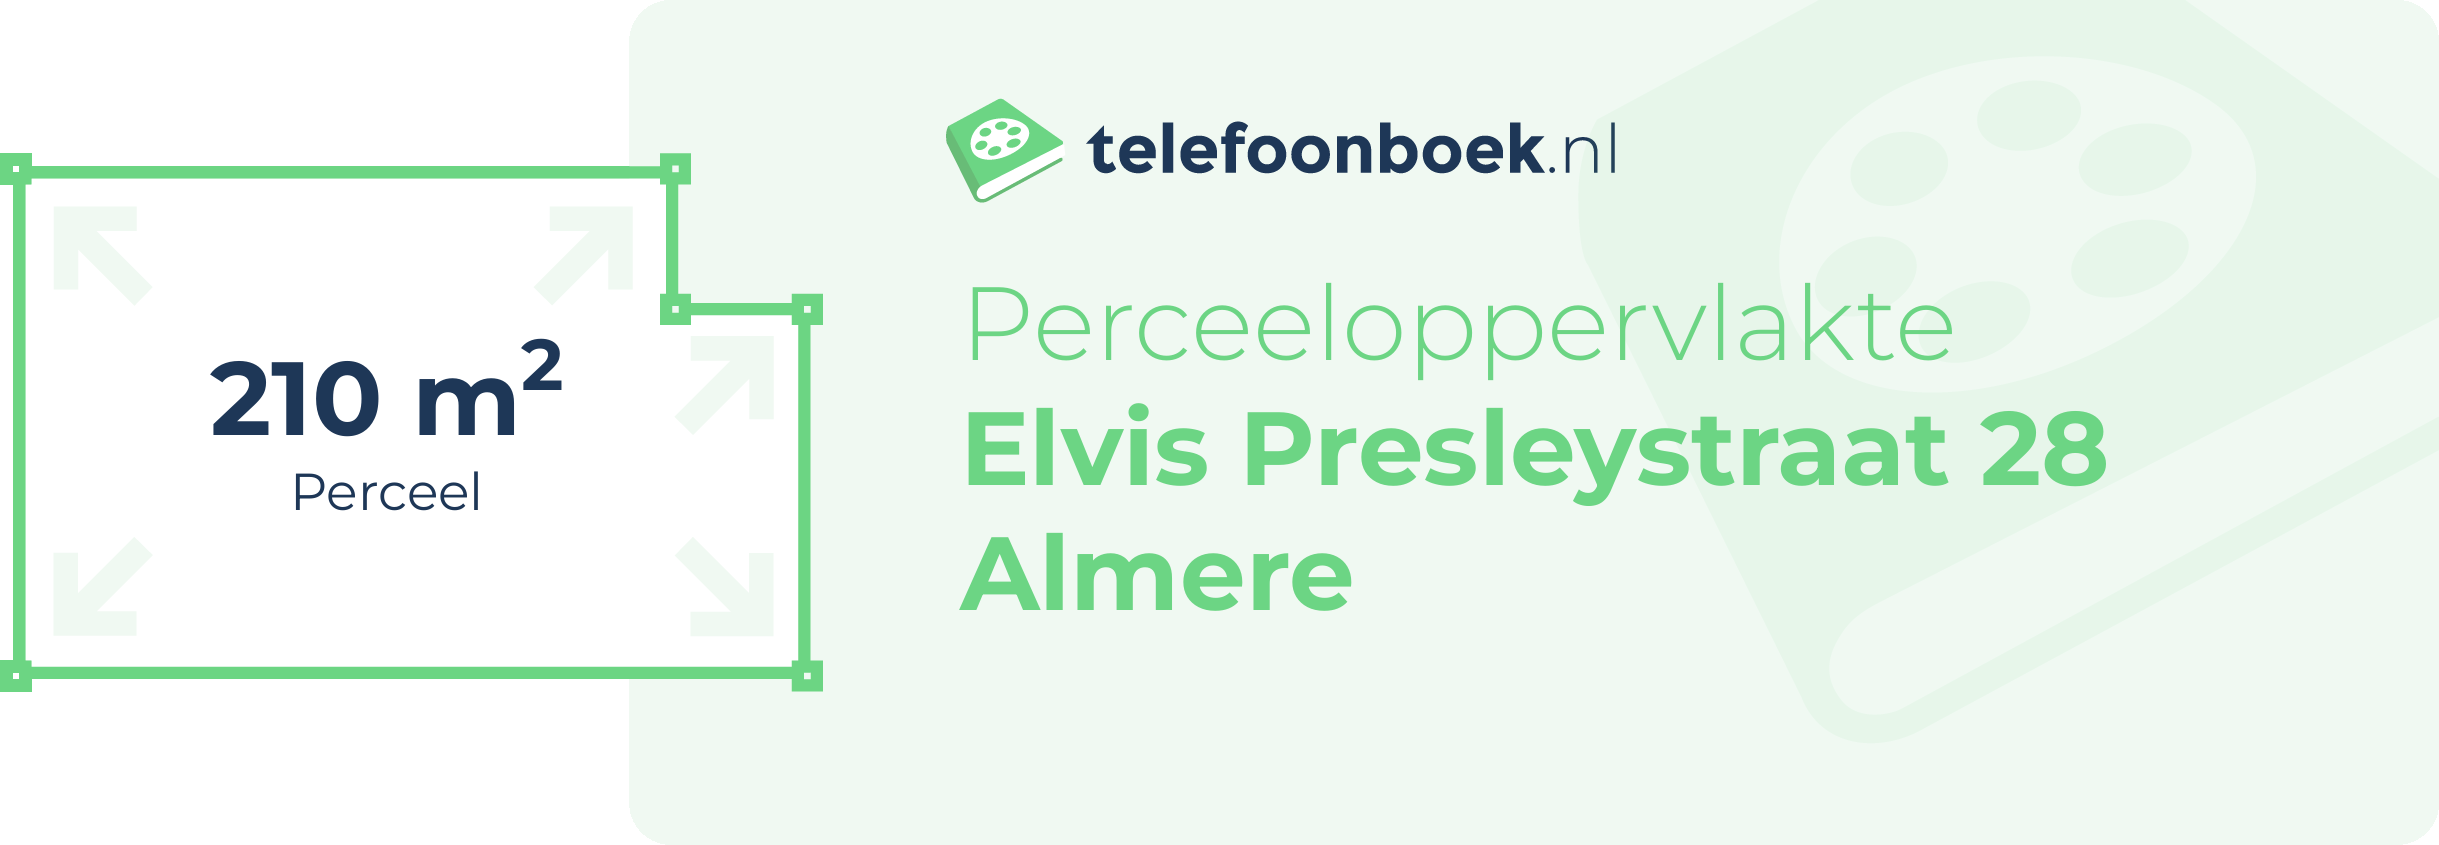 Perceeloppervlakte Elvis Presleystraat 28 Almere